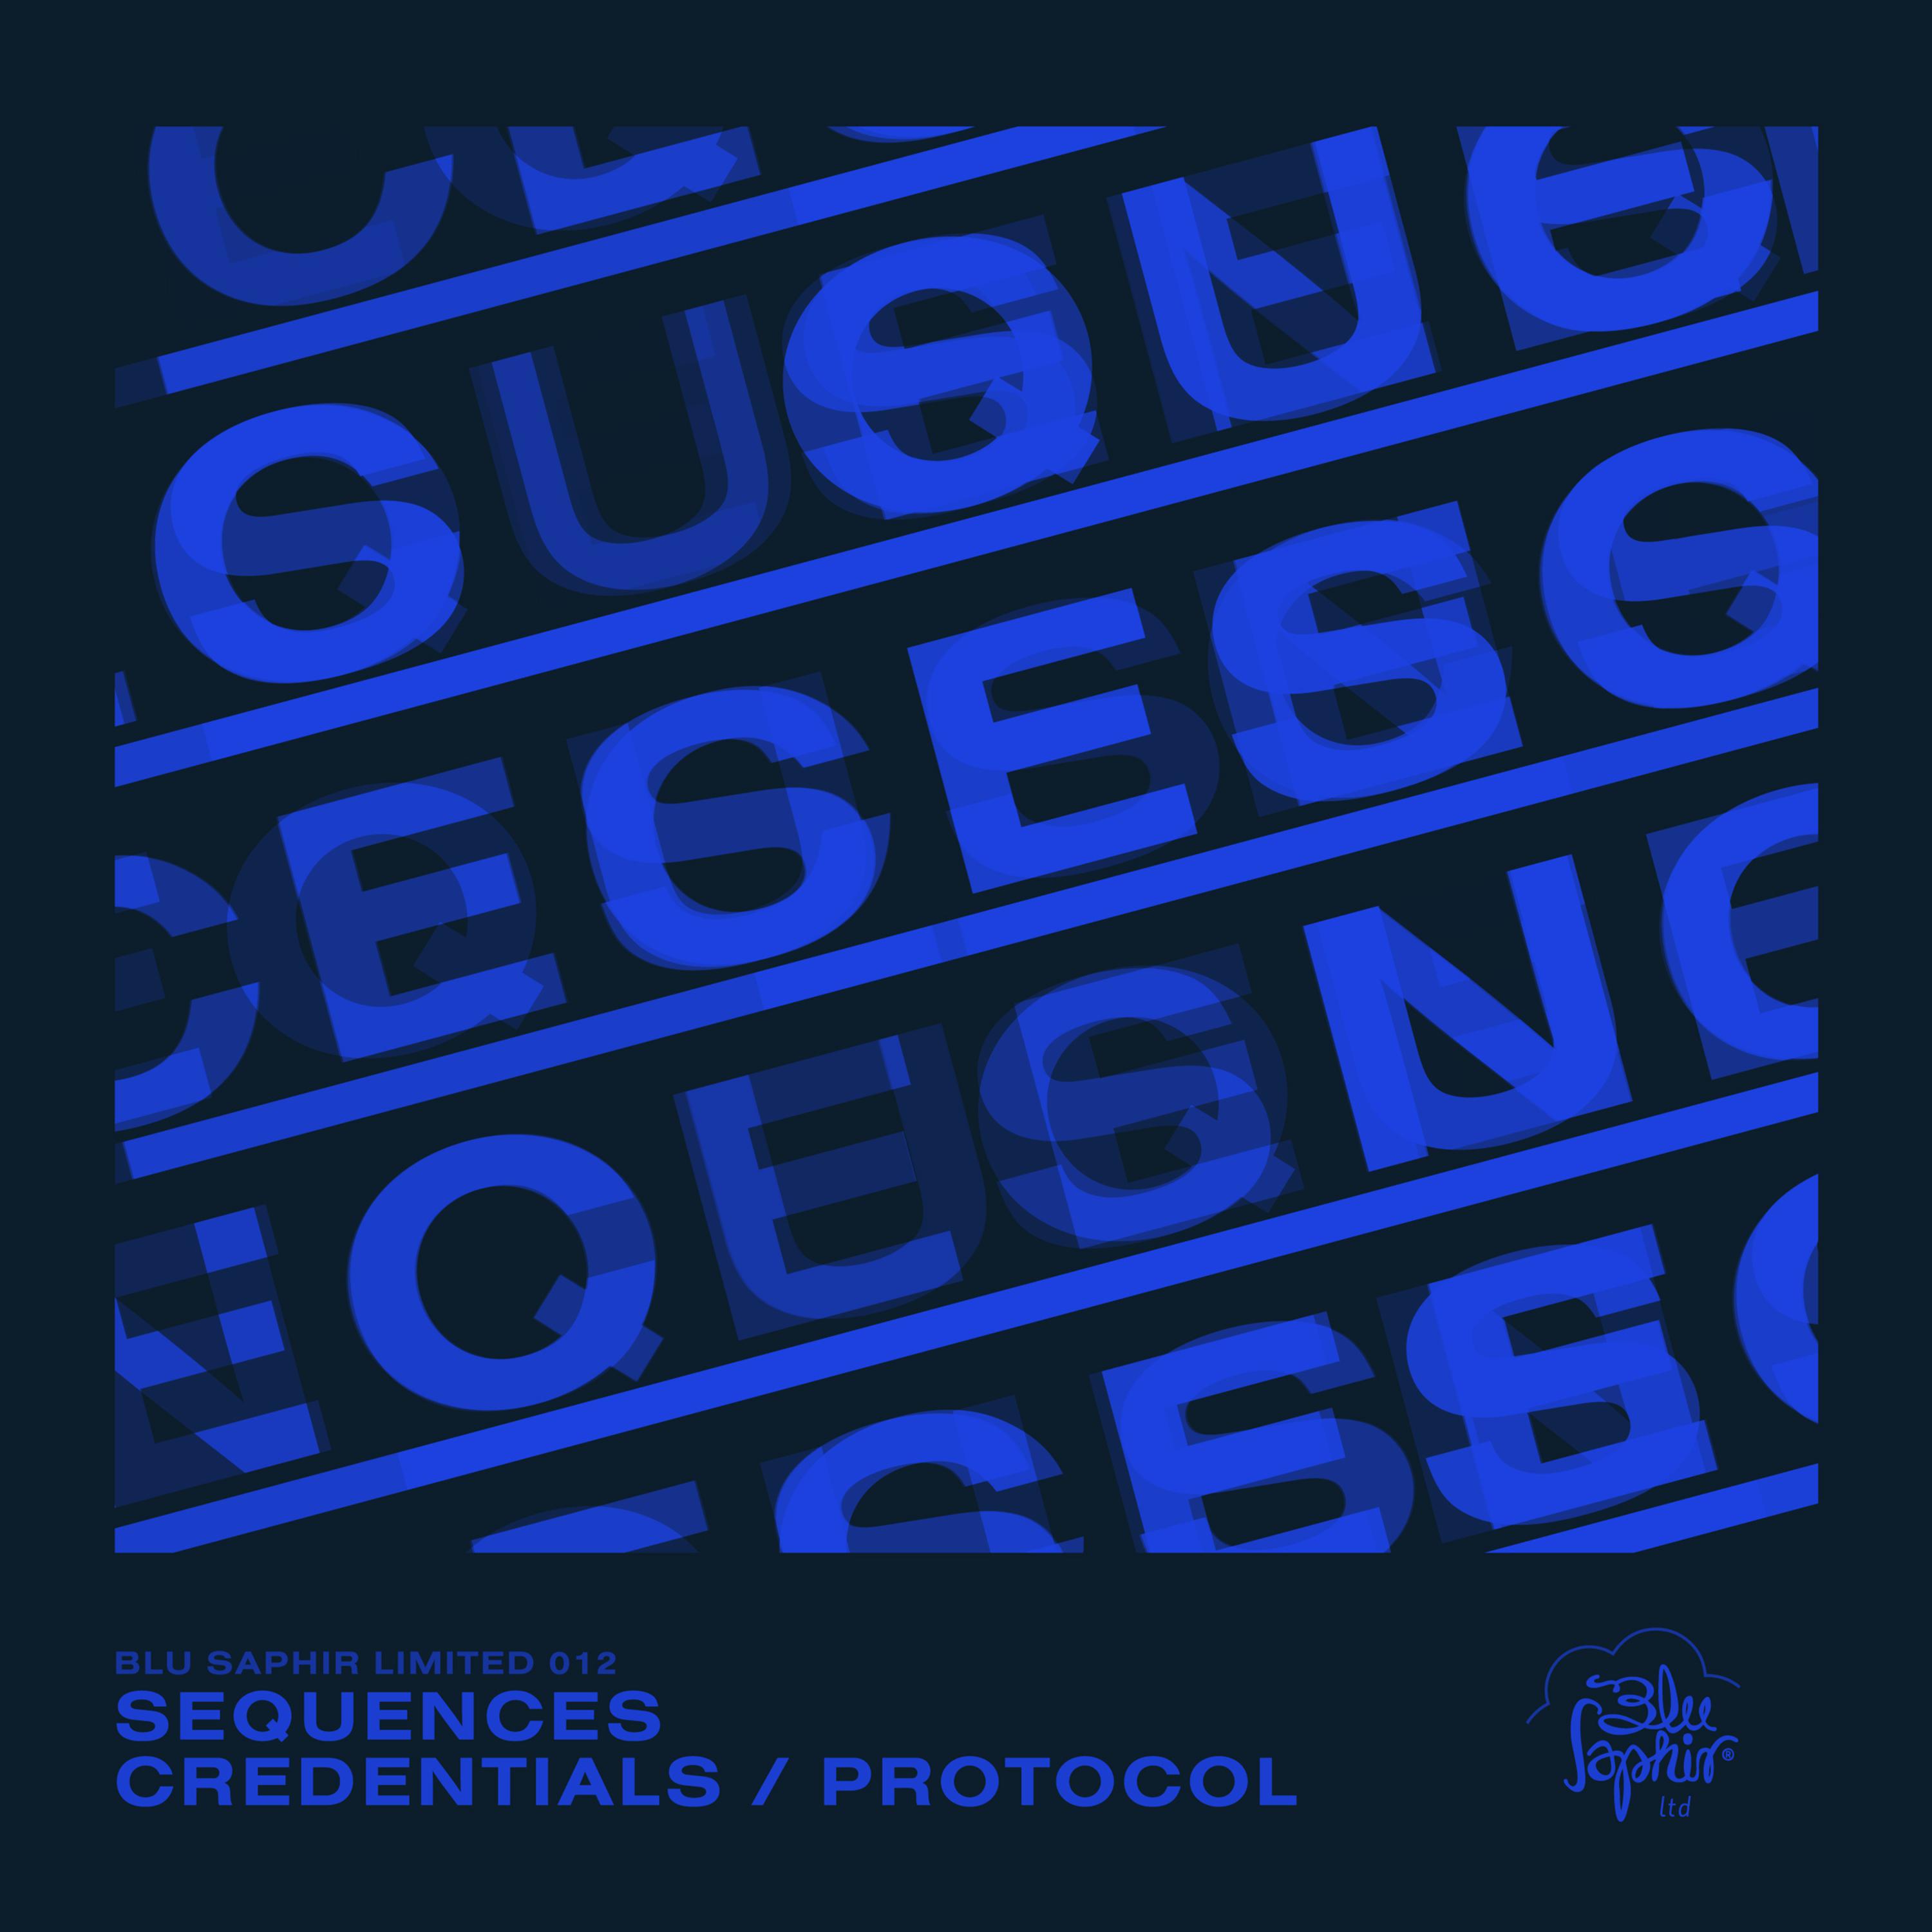 Credentials / Protocol